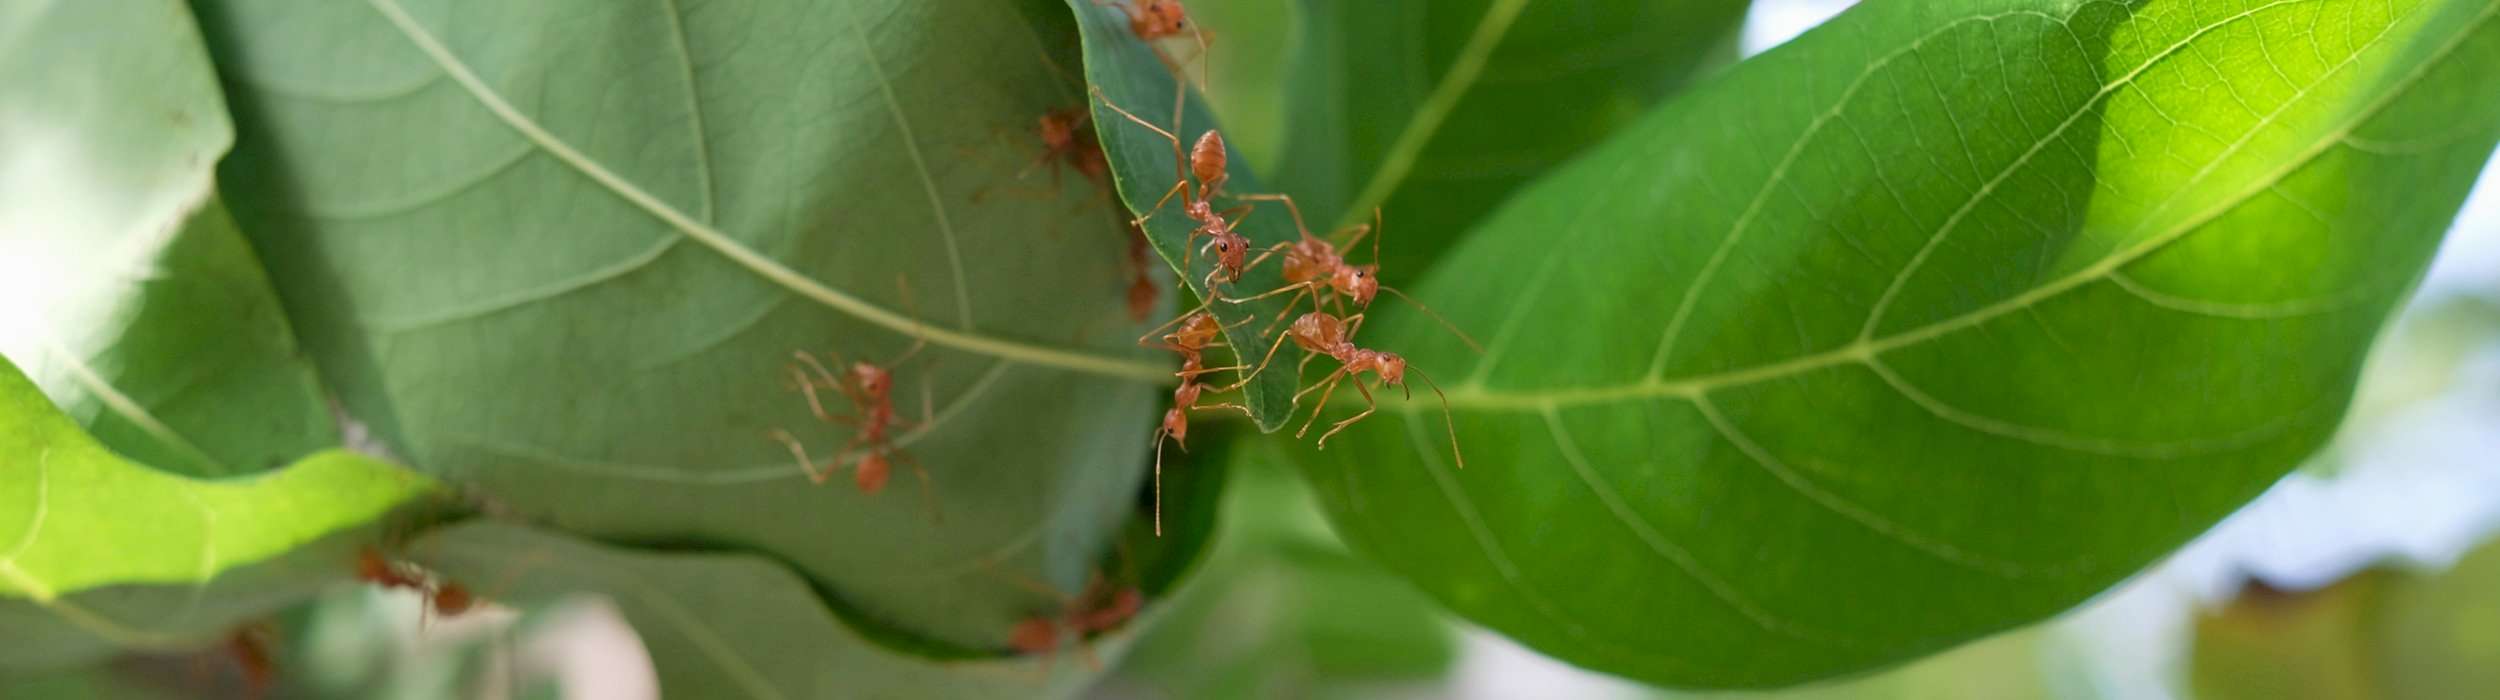 Ameisen auf einer Pflanze | wachira - stock.adobe.com